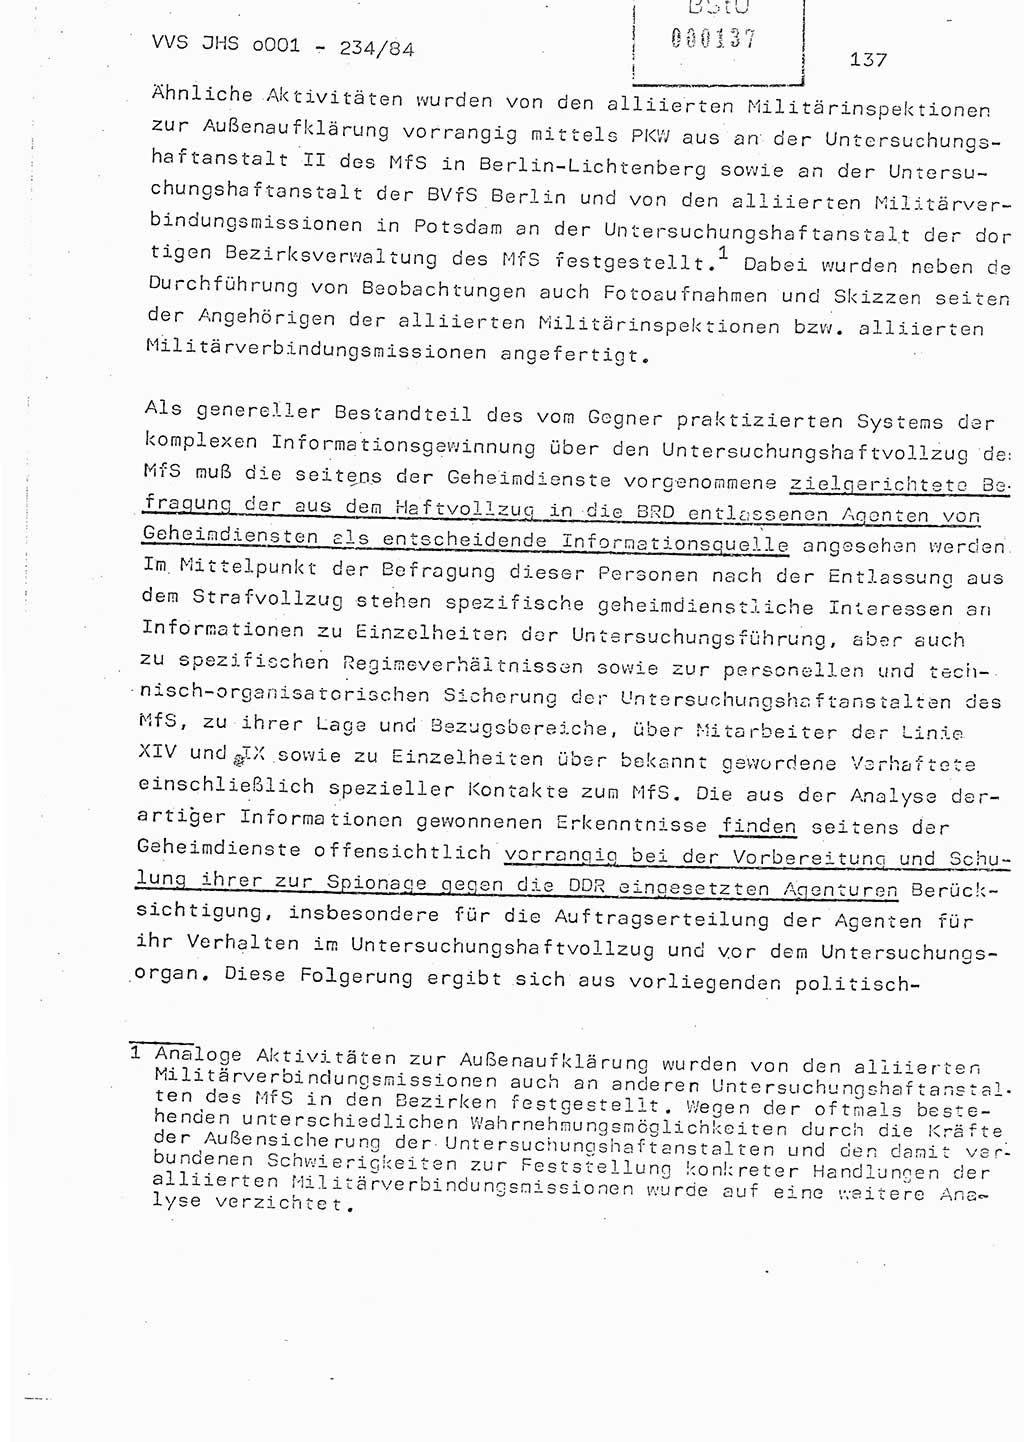 Dissertation Oberst Siegfried Rataizick (Abt. ⅩⅣ), Oberstleutnant Volkmar Heinz (Abt. ⅩⅣ), Oberstleutnant Werner Stein (HA Ⅸ), Hauptmann Heinz Conrad (JHS), Ministerium für Staatssicherheit (MfS) [Deutsche Demokratische Republik (DDR)], Juristische Hochschule (JHS), Vertrauliche Verschlußsache (VVS) o001-234/84, Potsdam 1984, Seite 137 (Diss. MfS DDR JHS VVS o001-234/84 1984, S. 137)